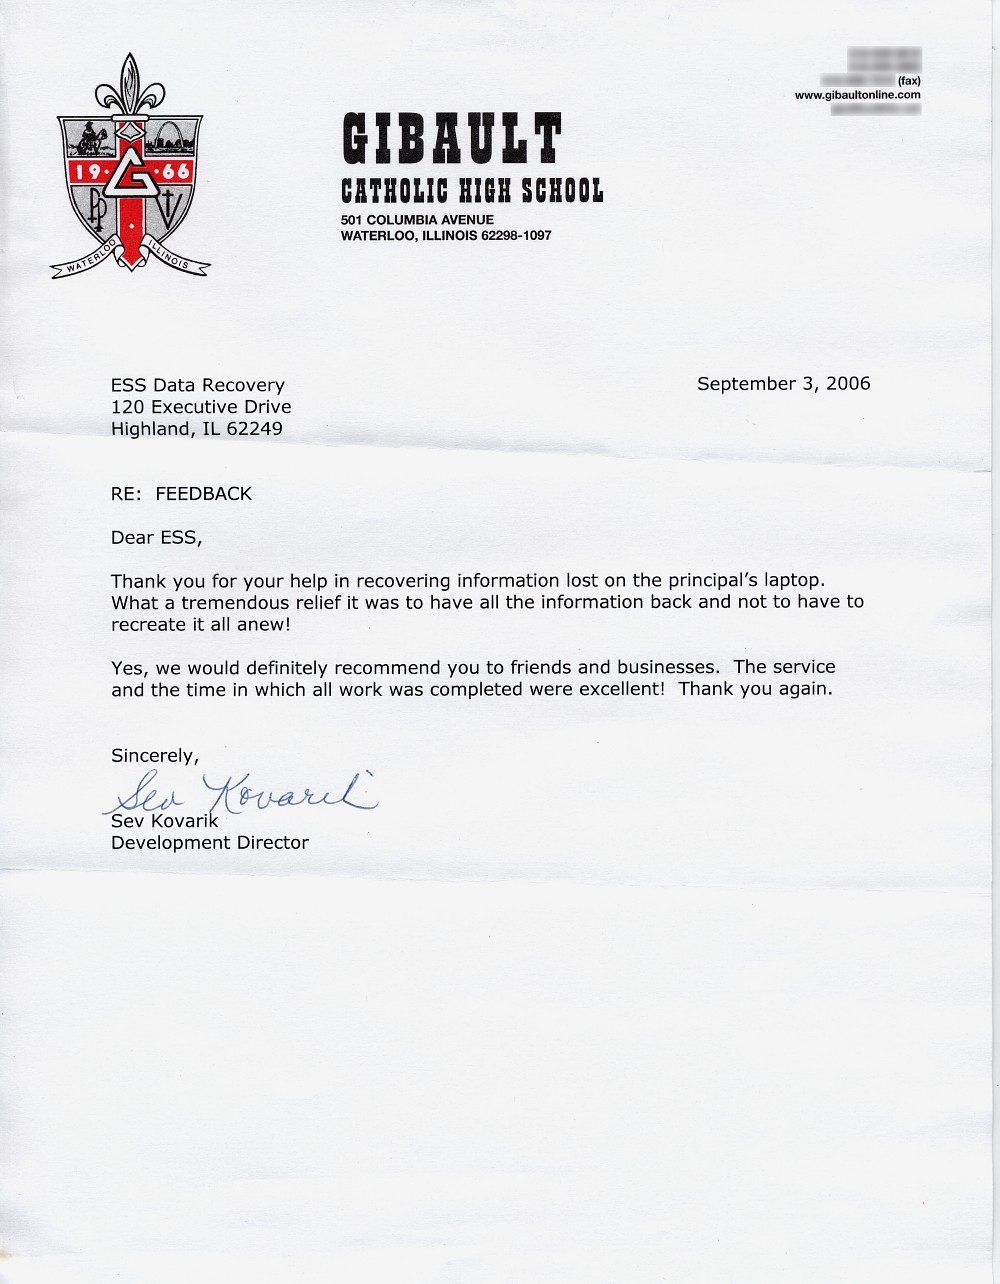 Gibault Catholic High School testimonial letter